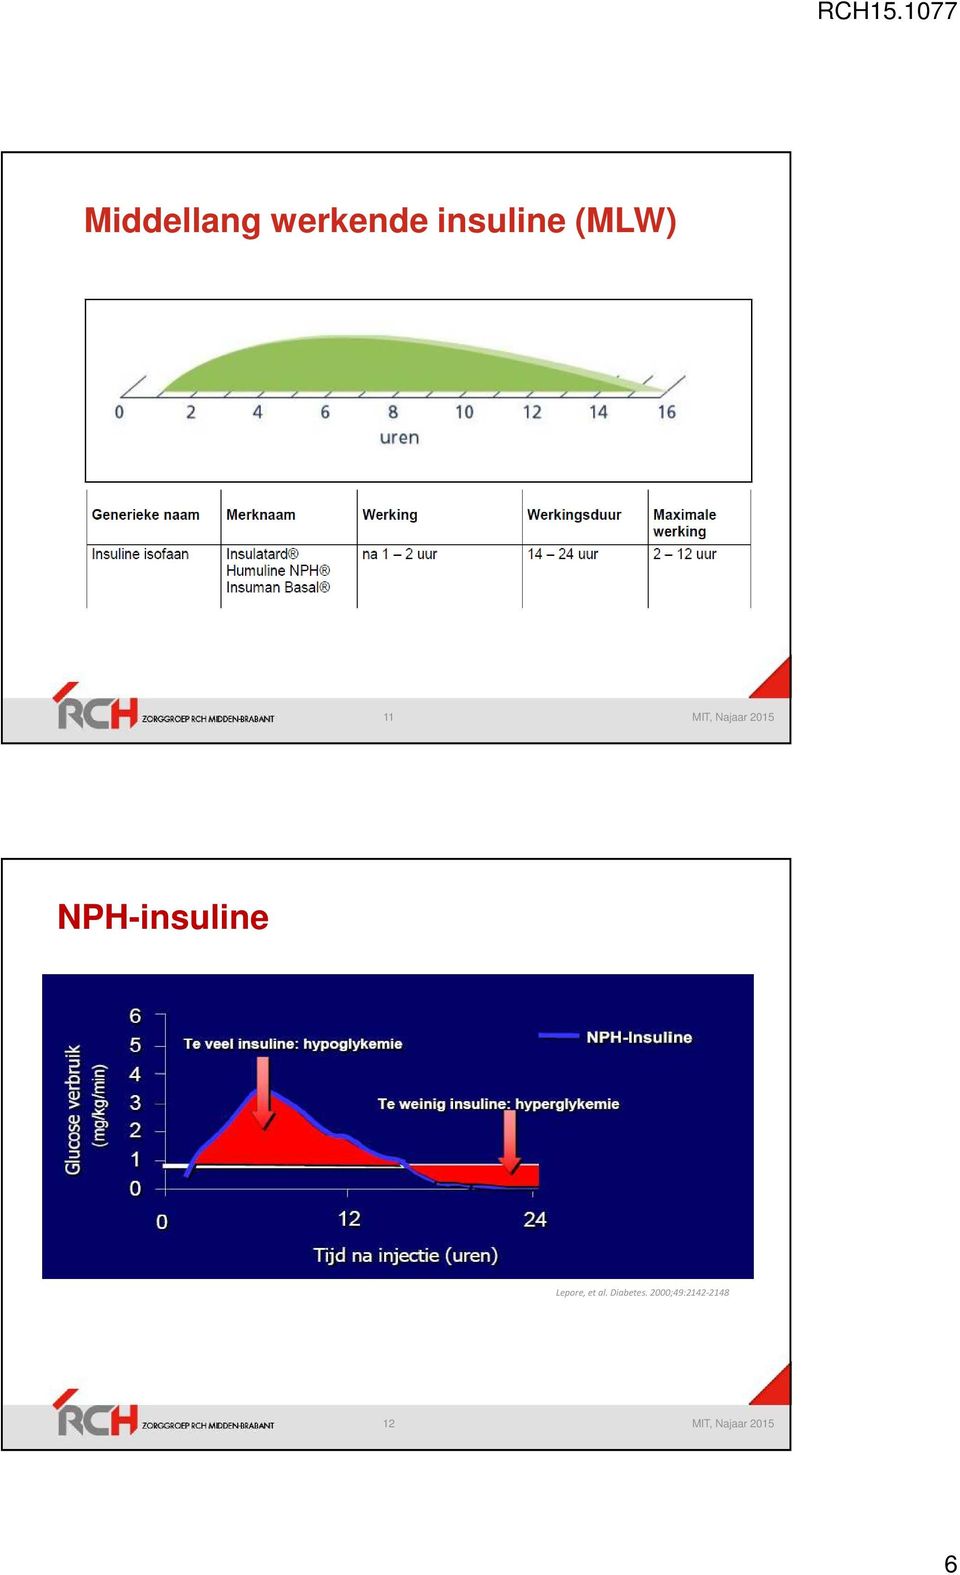 NPH-insuline Lepore, et